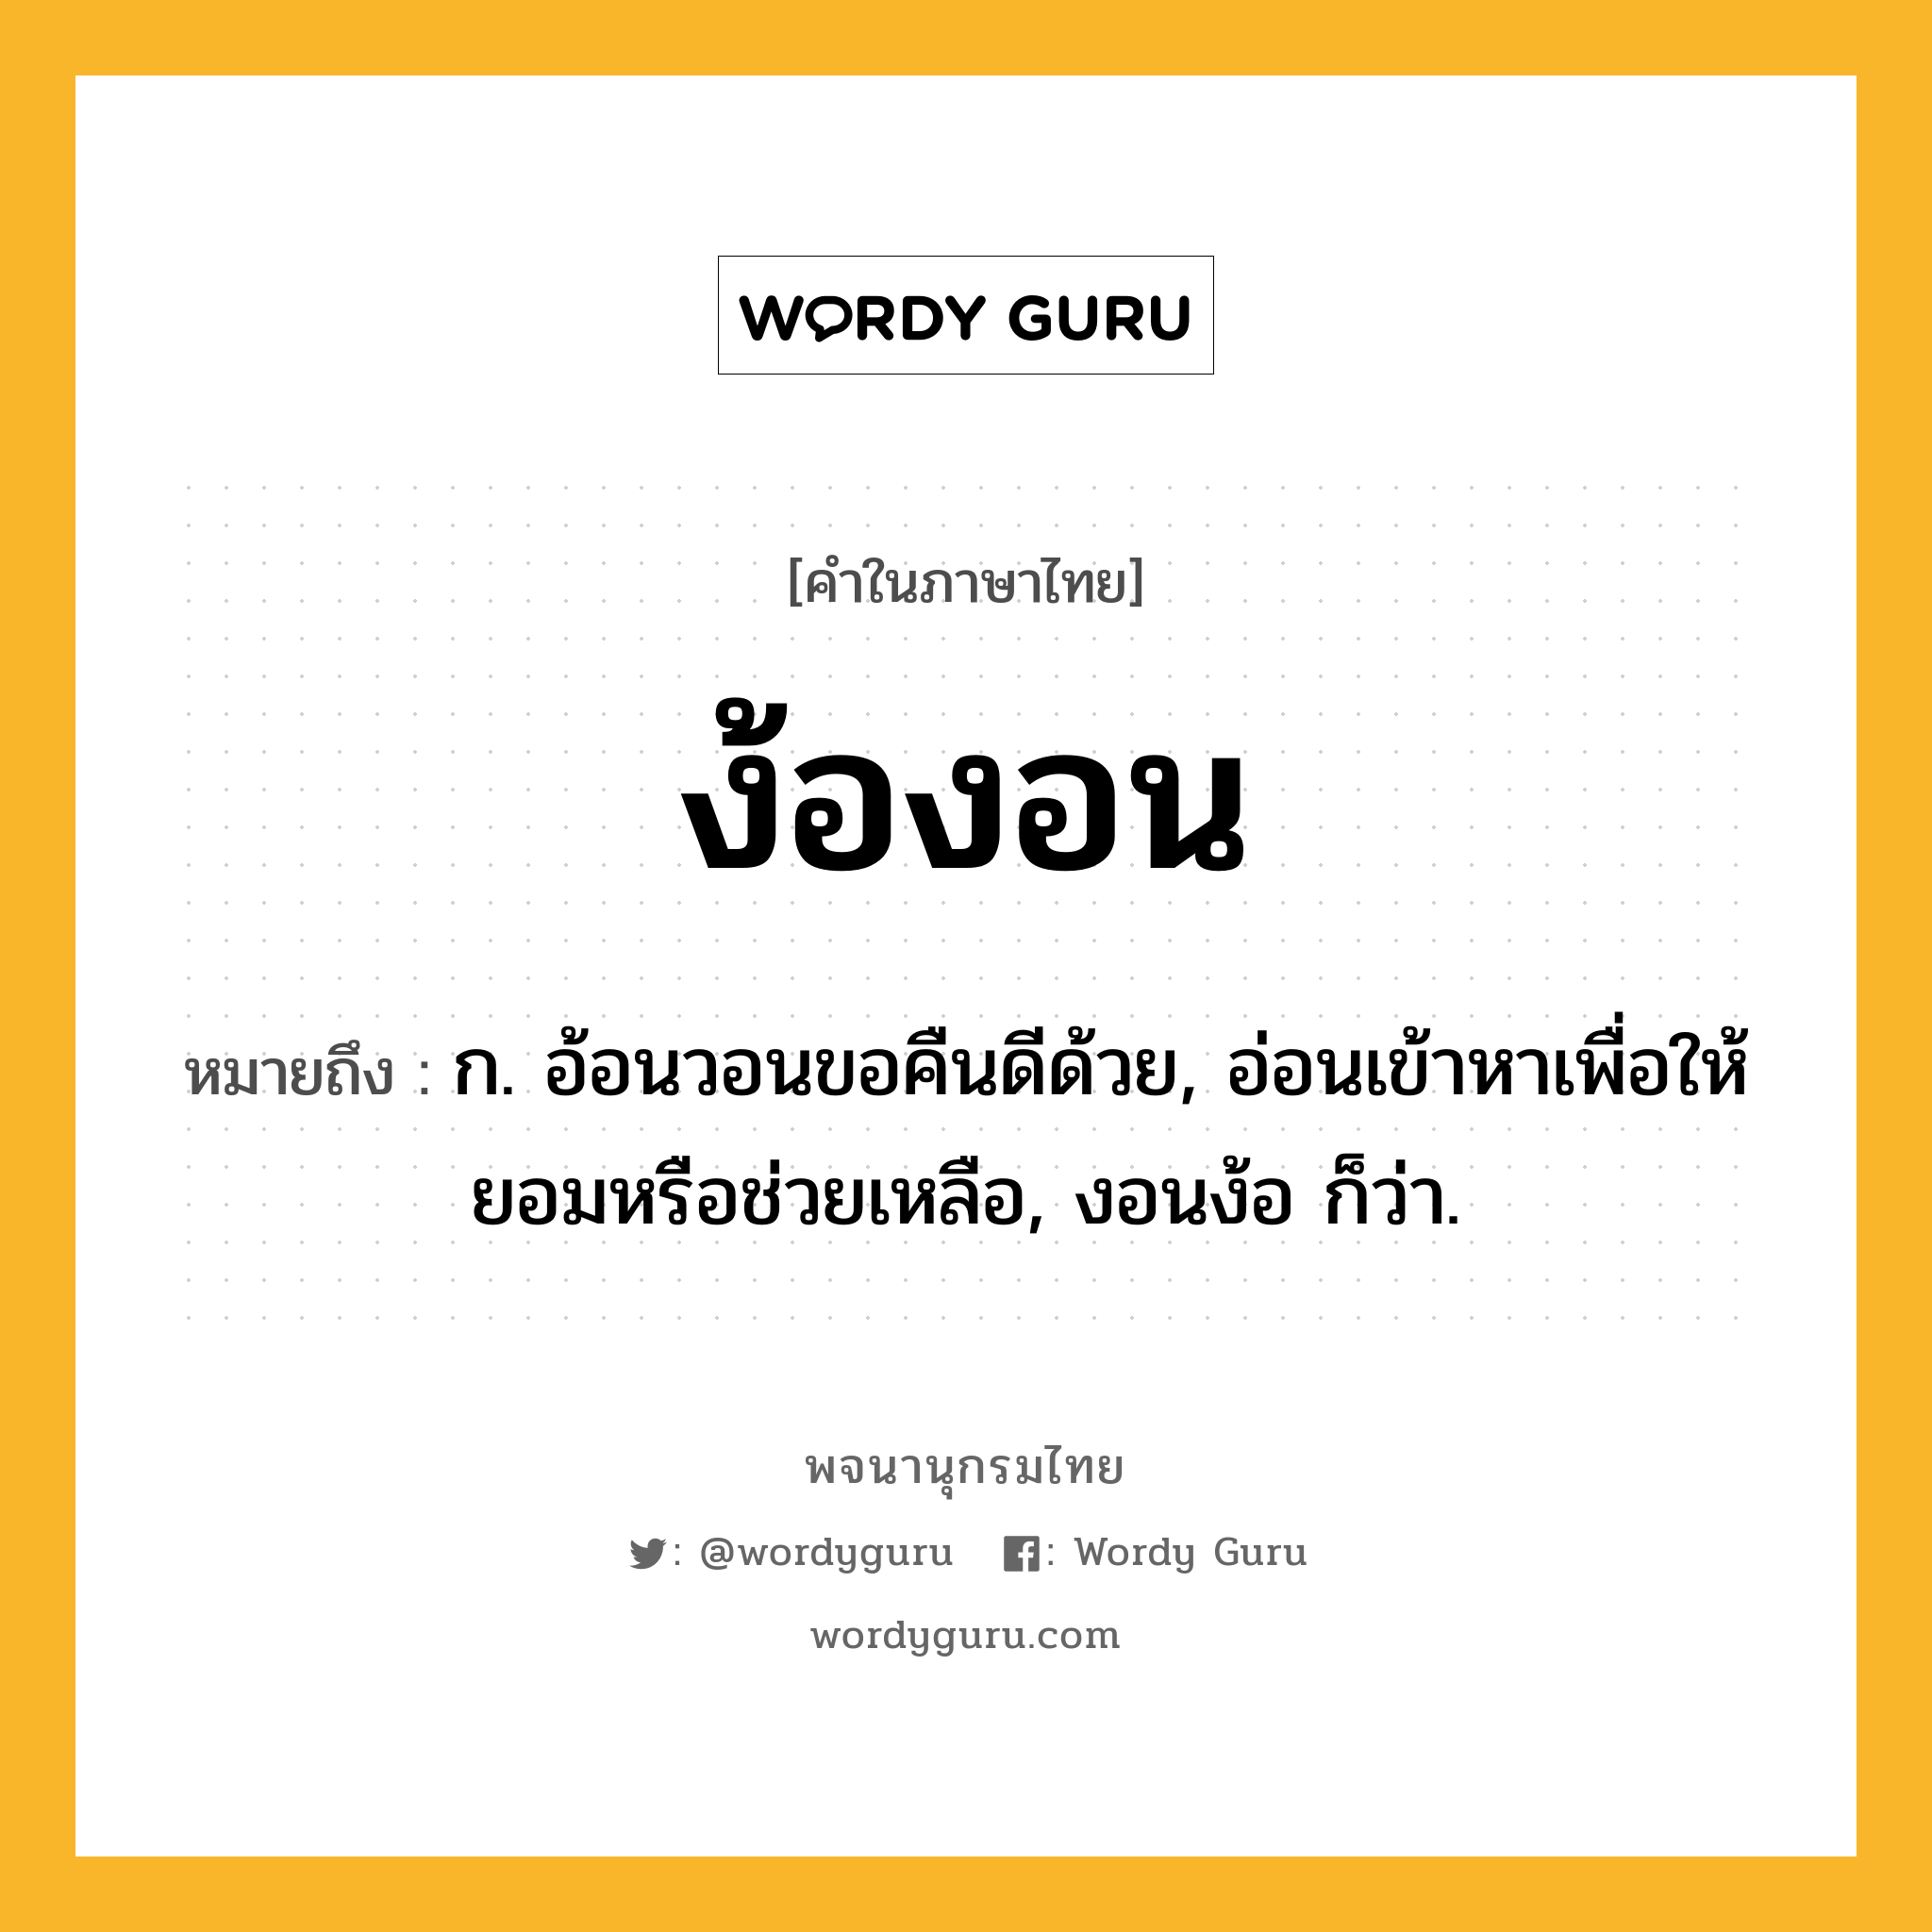 ง้องอน ความหมาย หมายถึงอะไร?, คำในภาษาไทย ง้องอน หมายถึง ก. อ้อนวอนขอคืนดีด้วย, อ่อนเข้าหาเพื่อให้ยอมหรือช่วยเหลือ, งอนง้อ ก็ว่า.